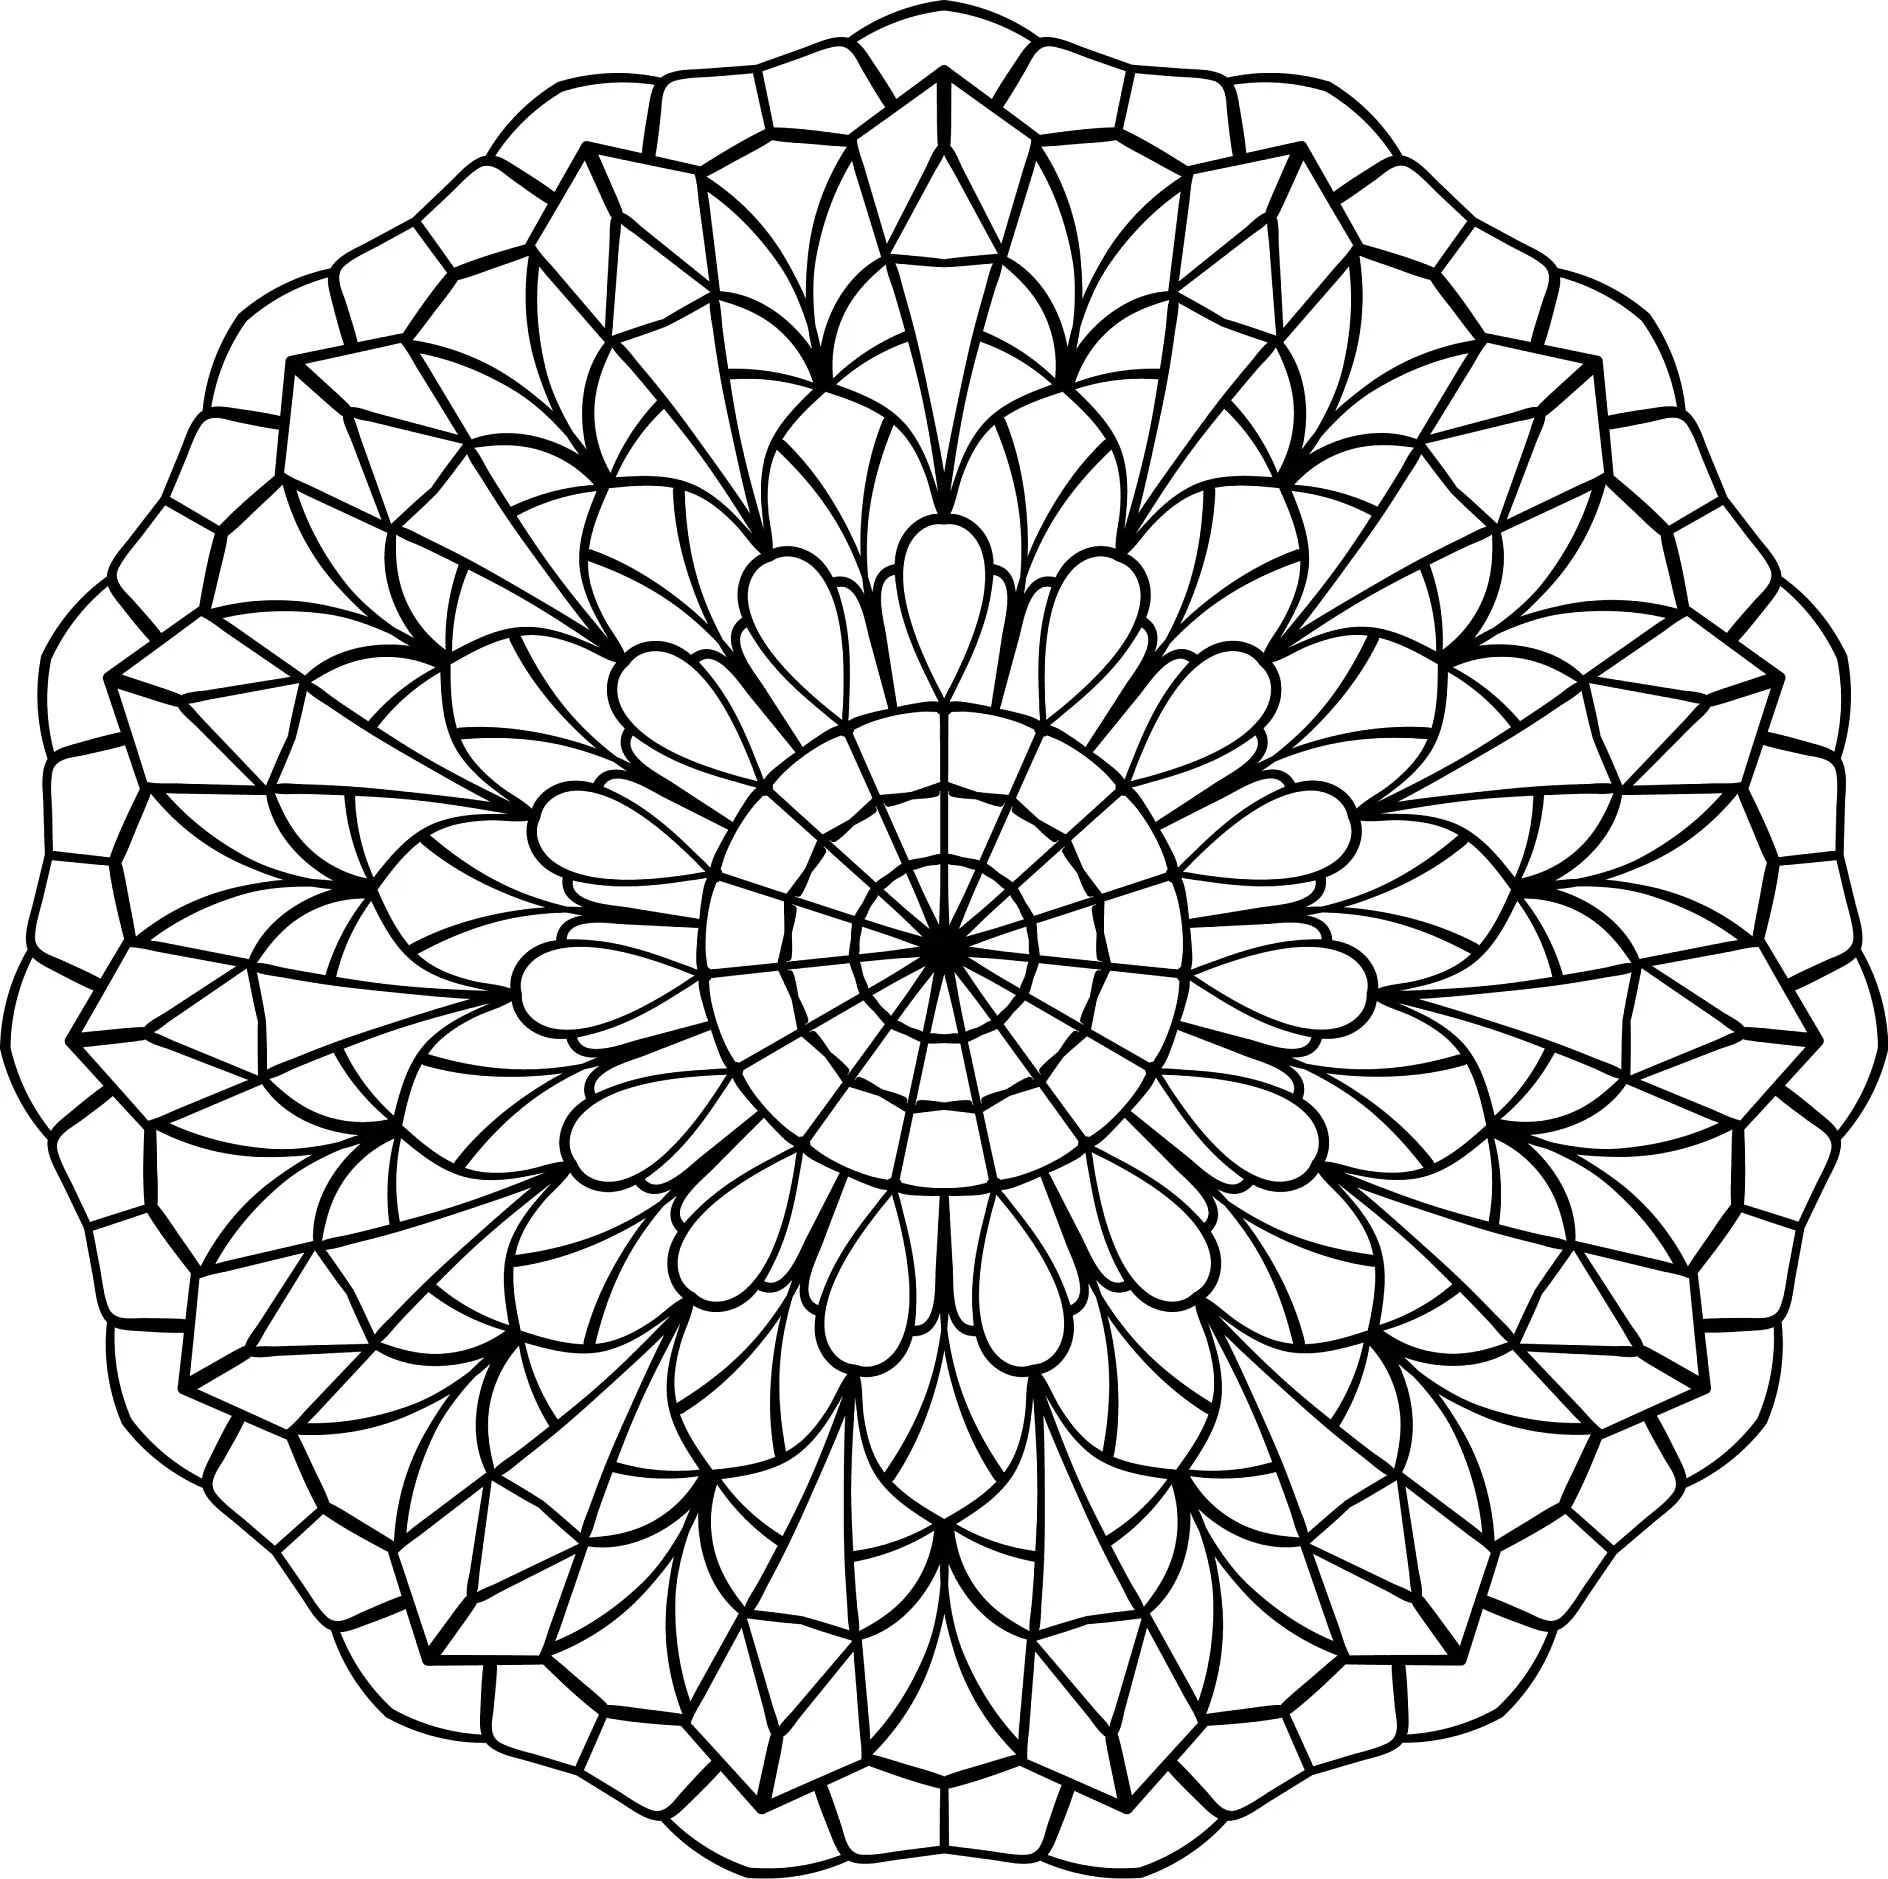 Ausmalbild Mandala mit facettenartigen Mustern